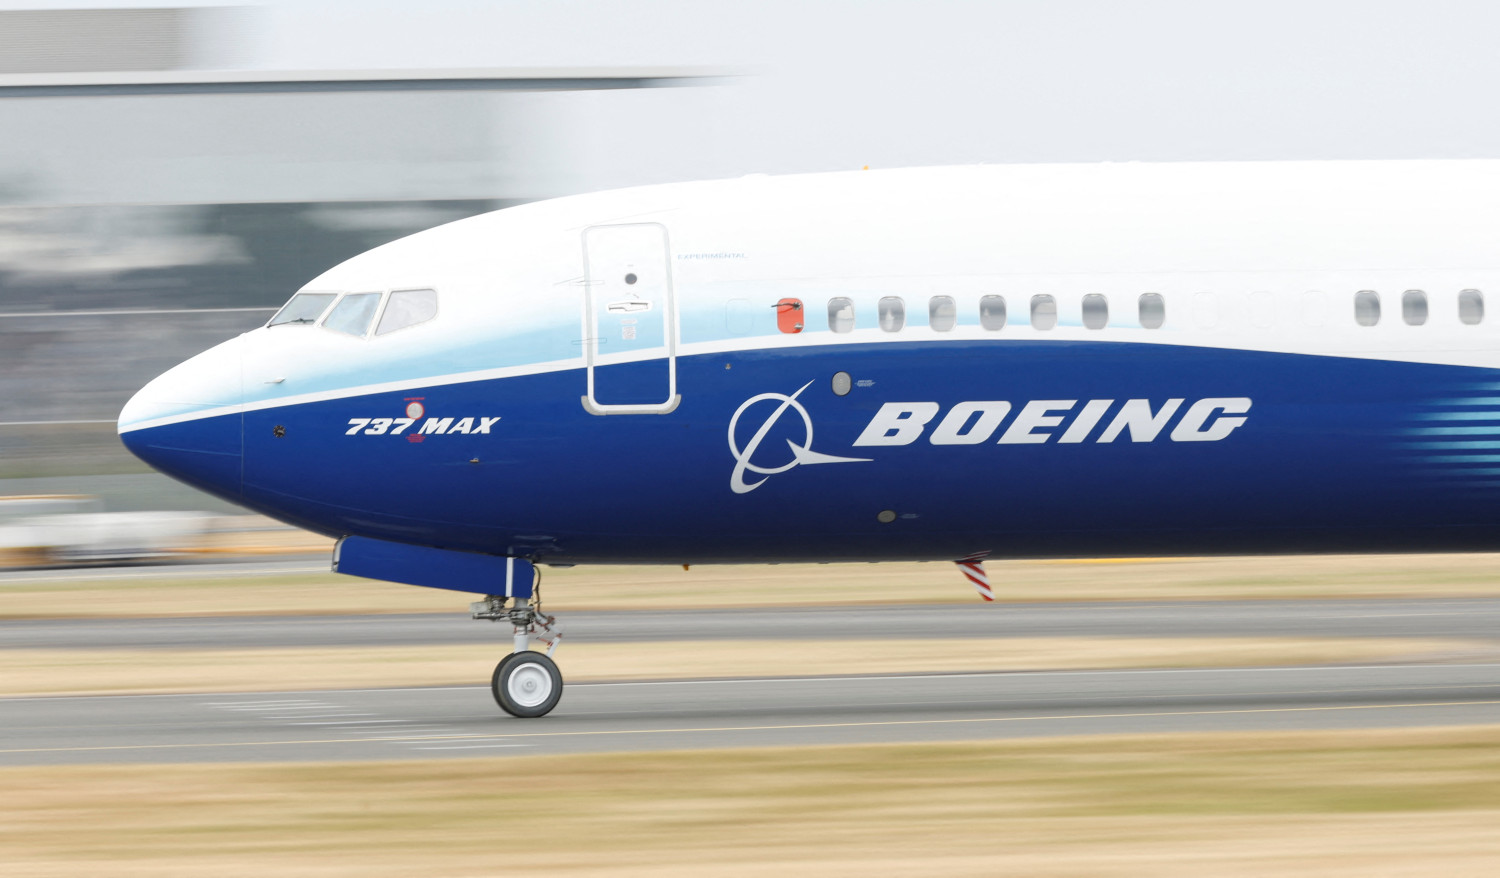 Boeing reduce un 65% sus pérdidas en el primer trimestre, hasta 425 millones